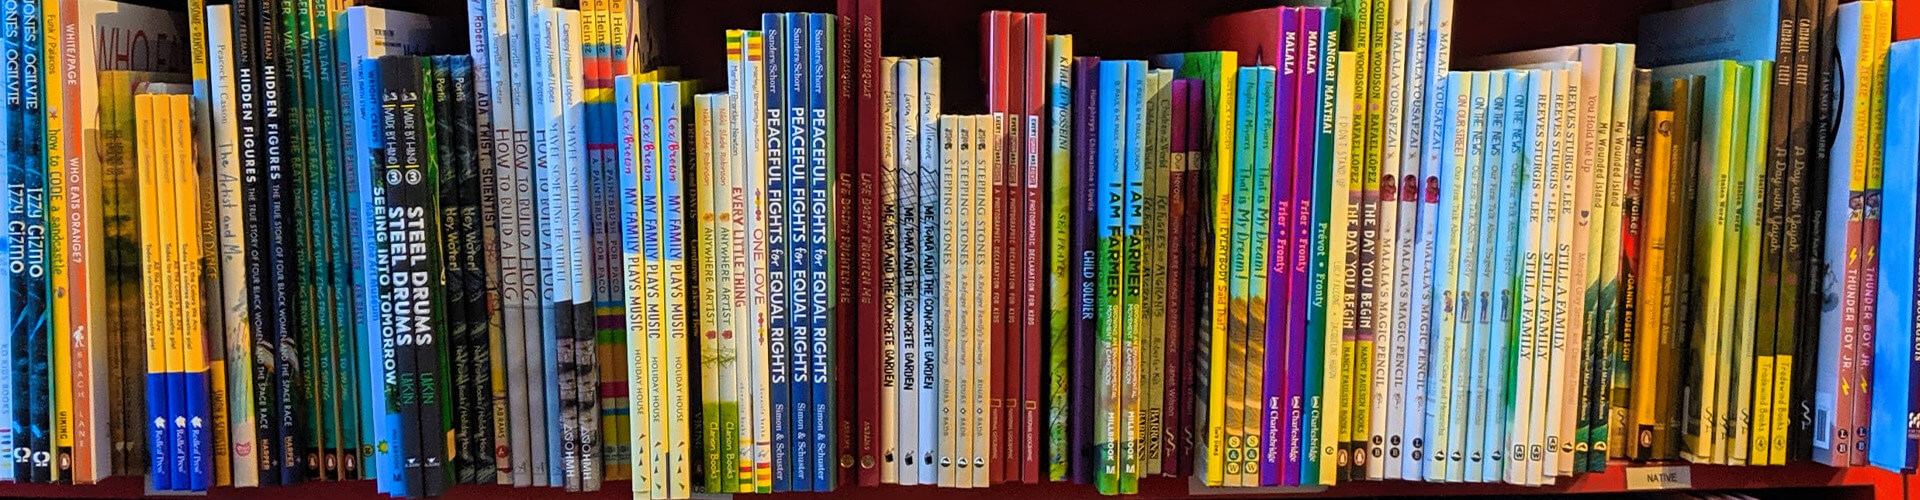 childrens books